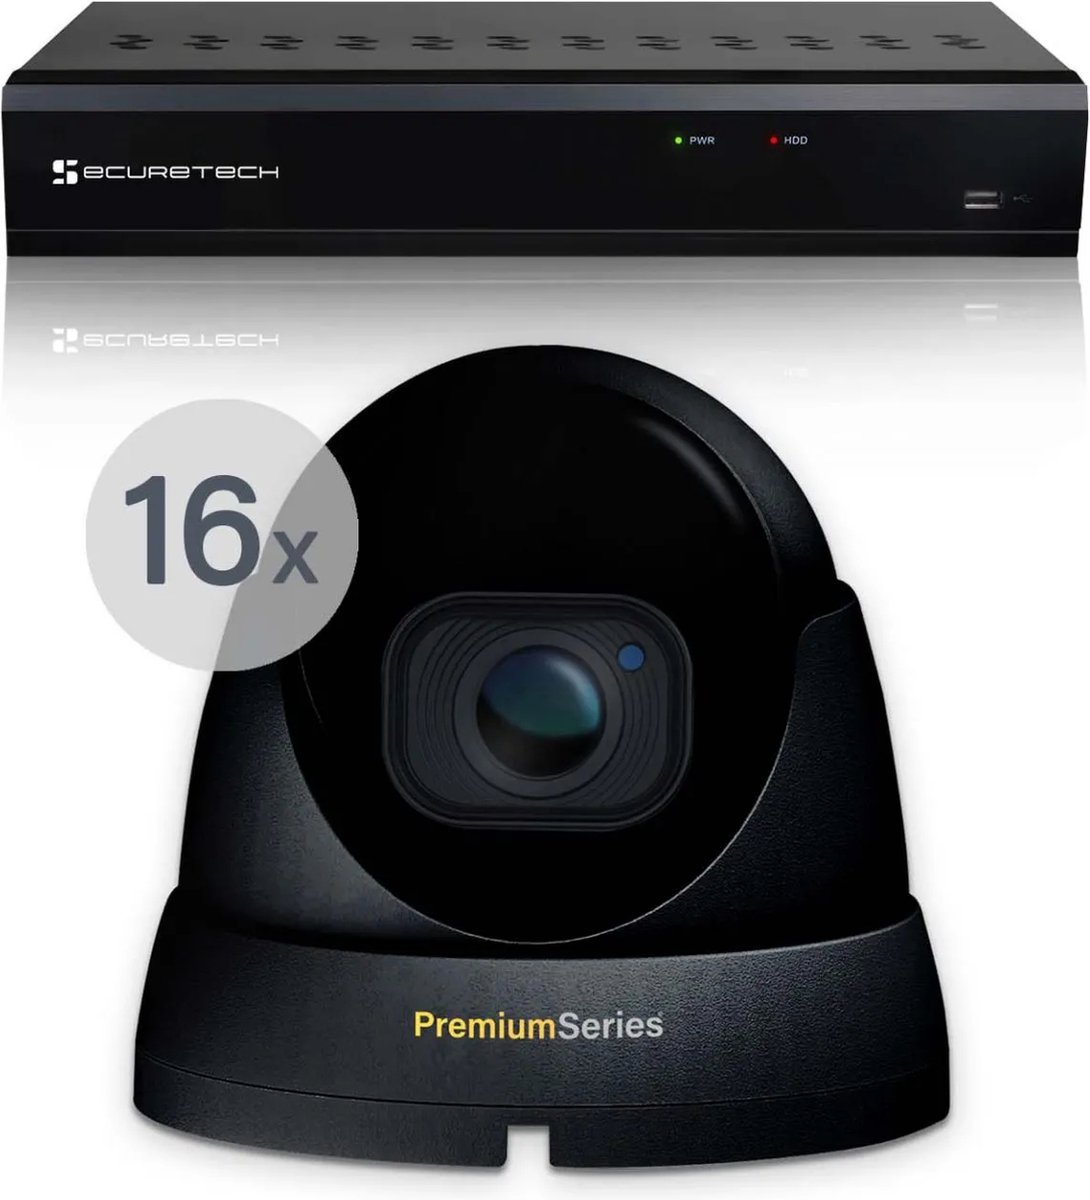 Securetech bekabeld camerabewaking systeem - met 16 beveiligingscamera - zwart - voor binnen & buiten - haarscherp beeldkwaliteit - nachtzicht tot 30 meter - software voor smartphone & pc